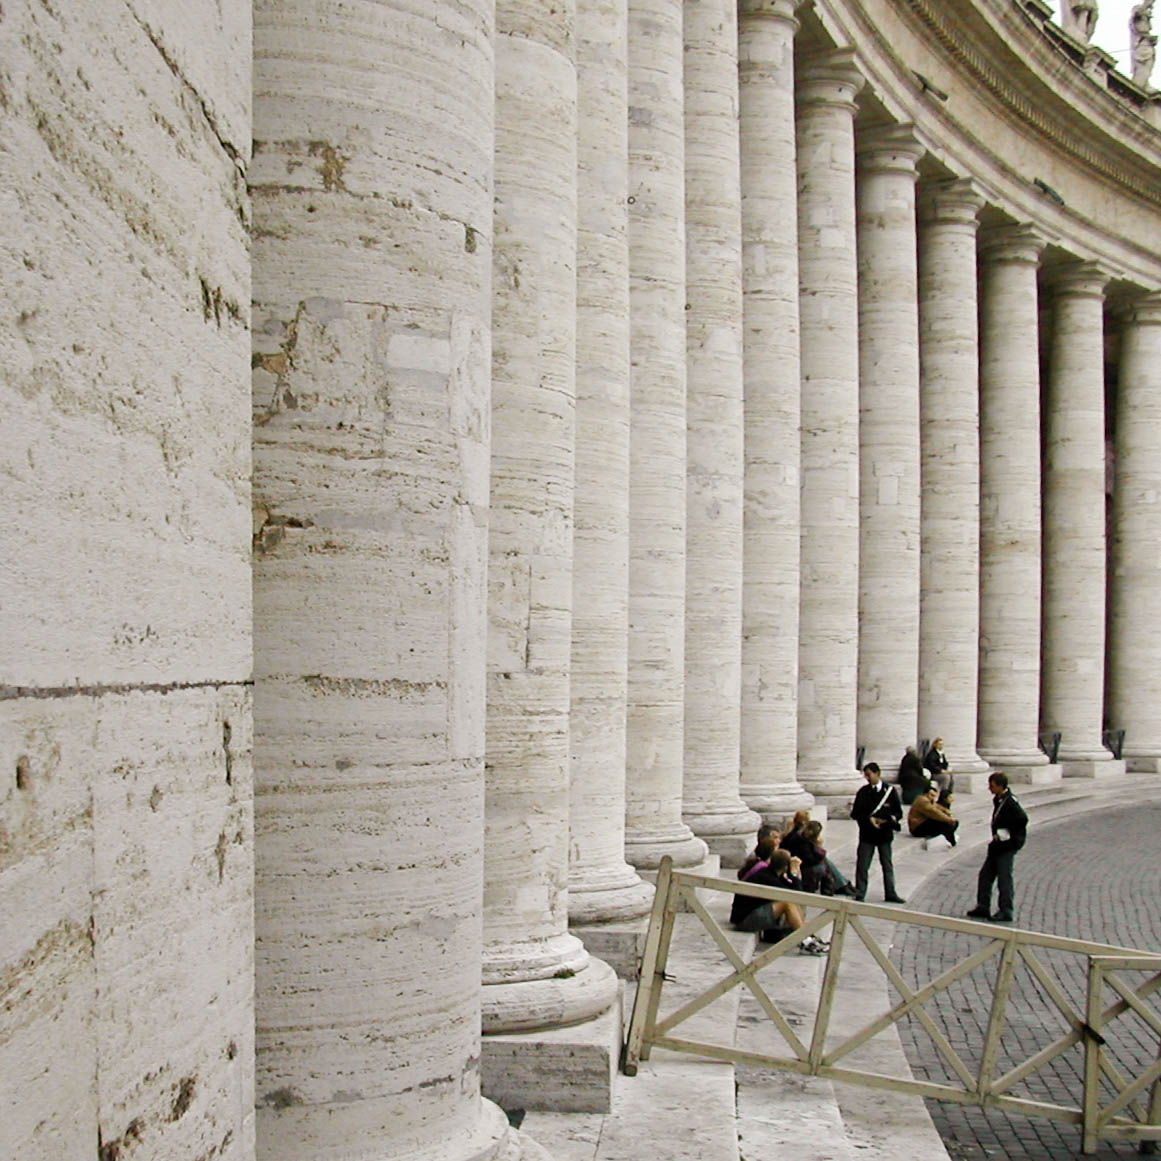 Monumenti in travertino: il Colonnato del Bernini a San Pietro